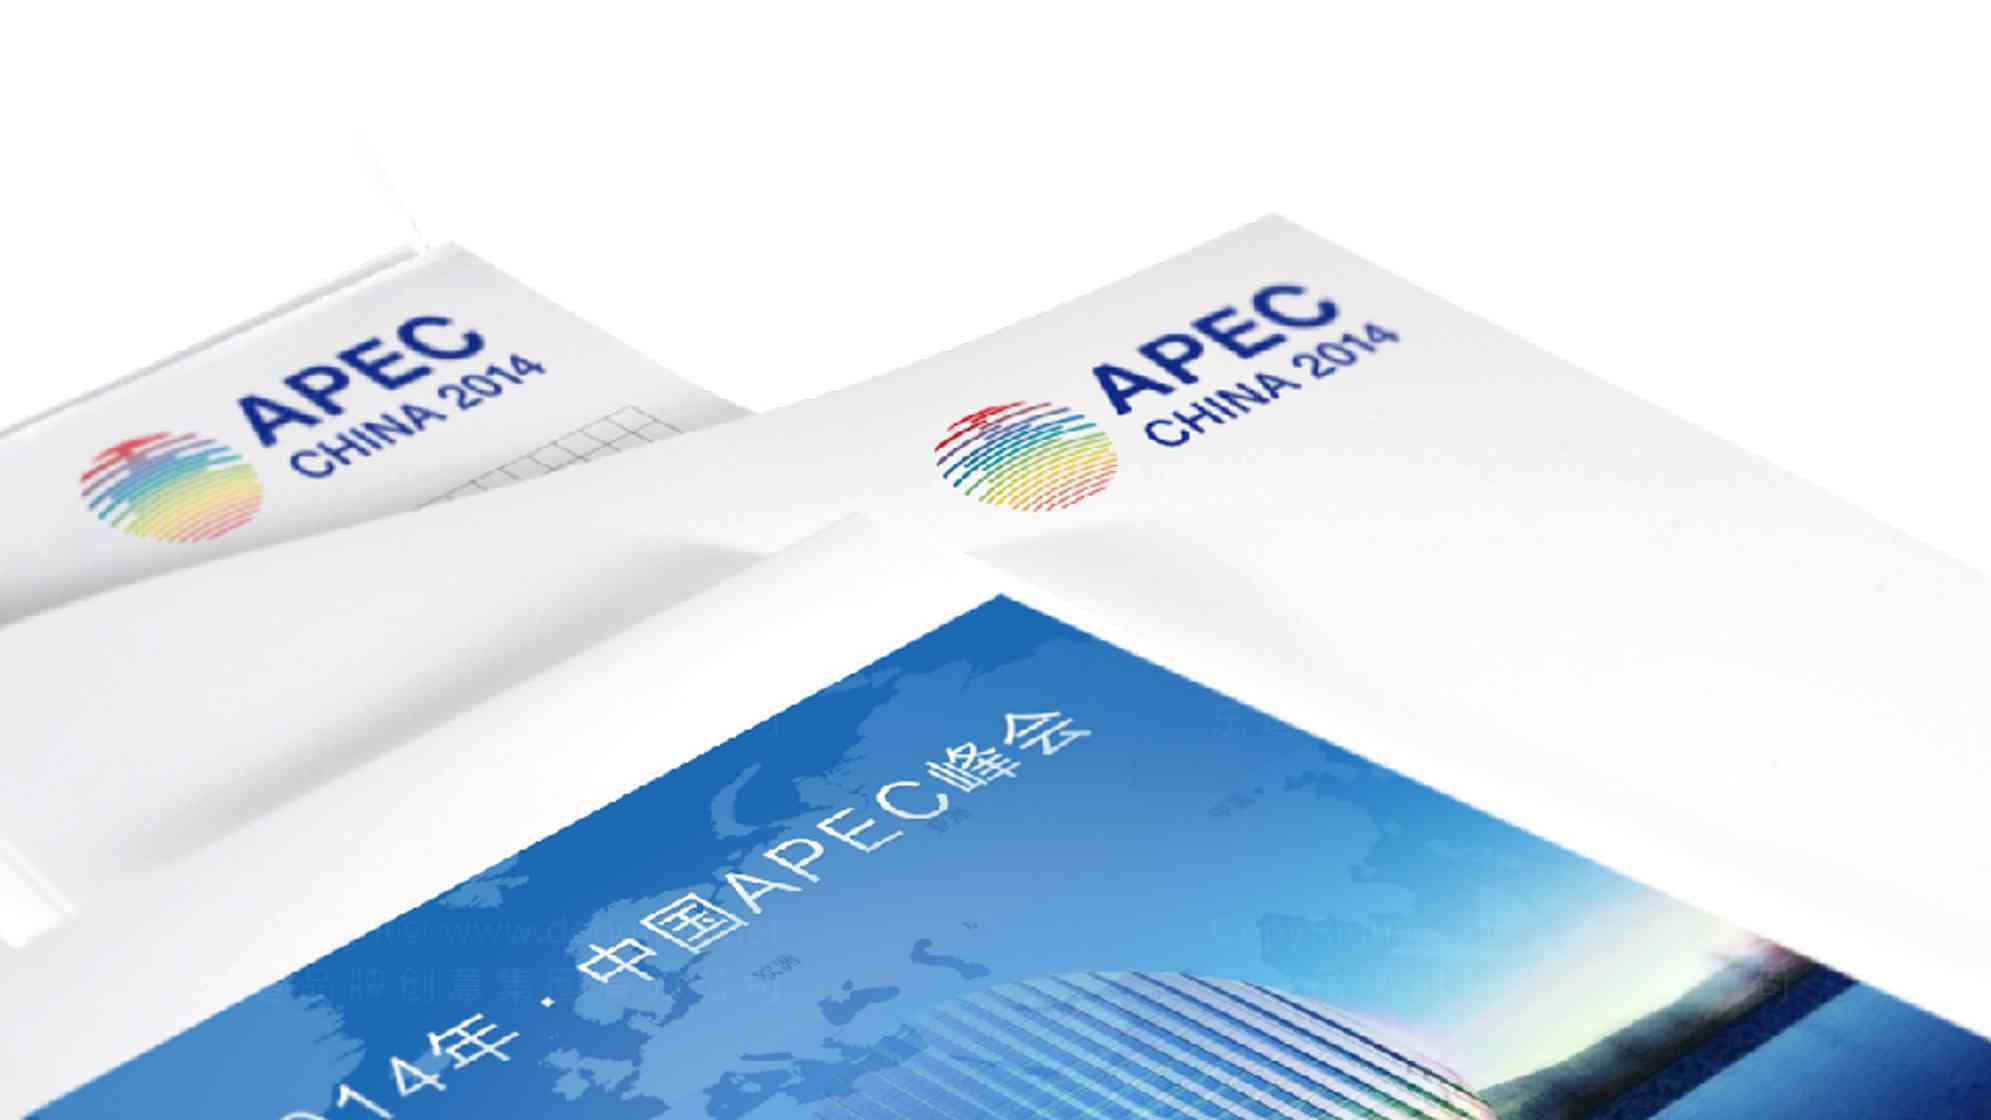 APEC China 2014會議vi設計圖片素材